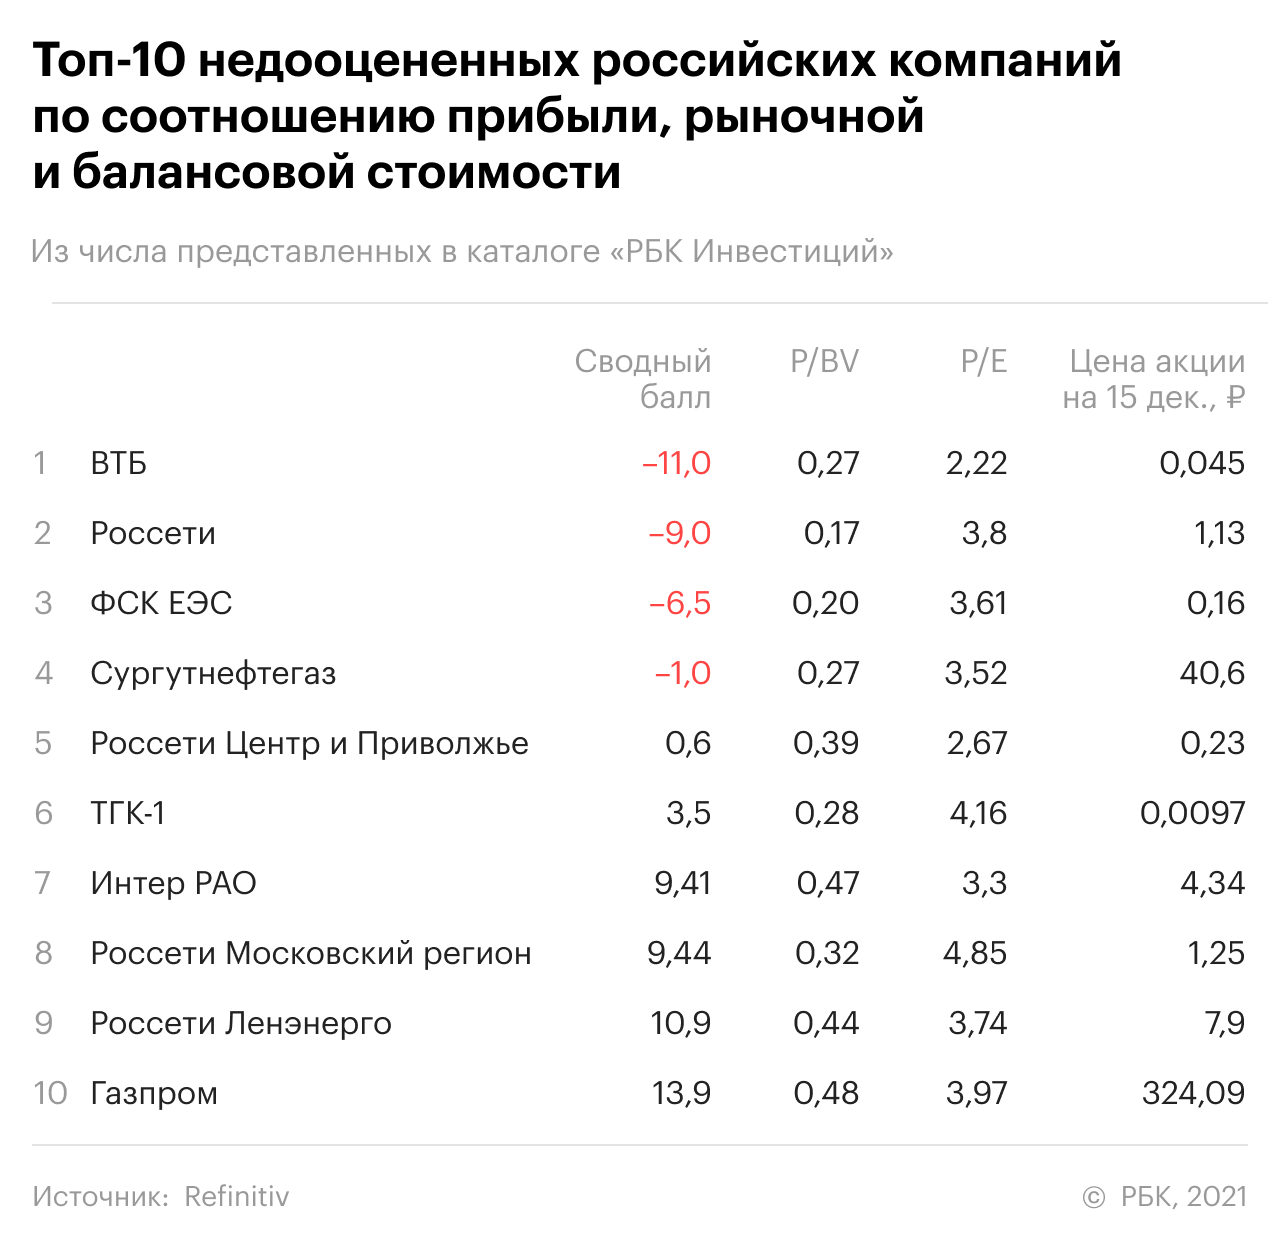 Топ-10 российских компаний с наименьшими P/BV и P/E